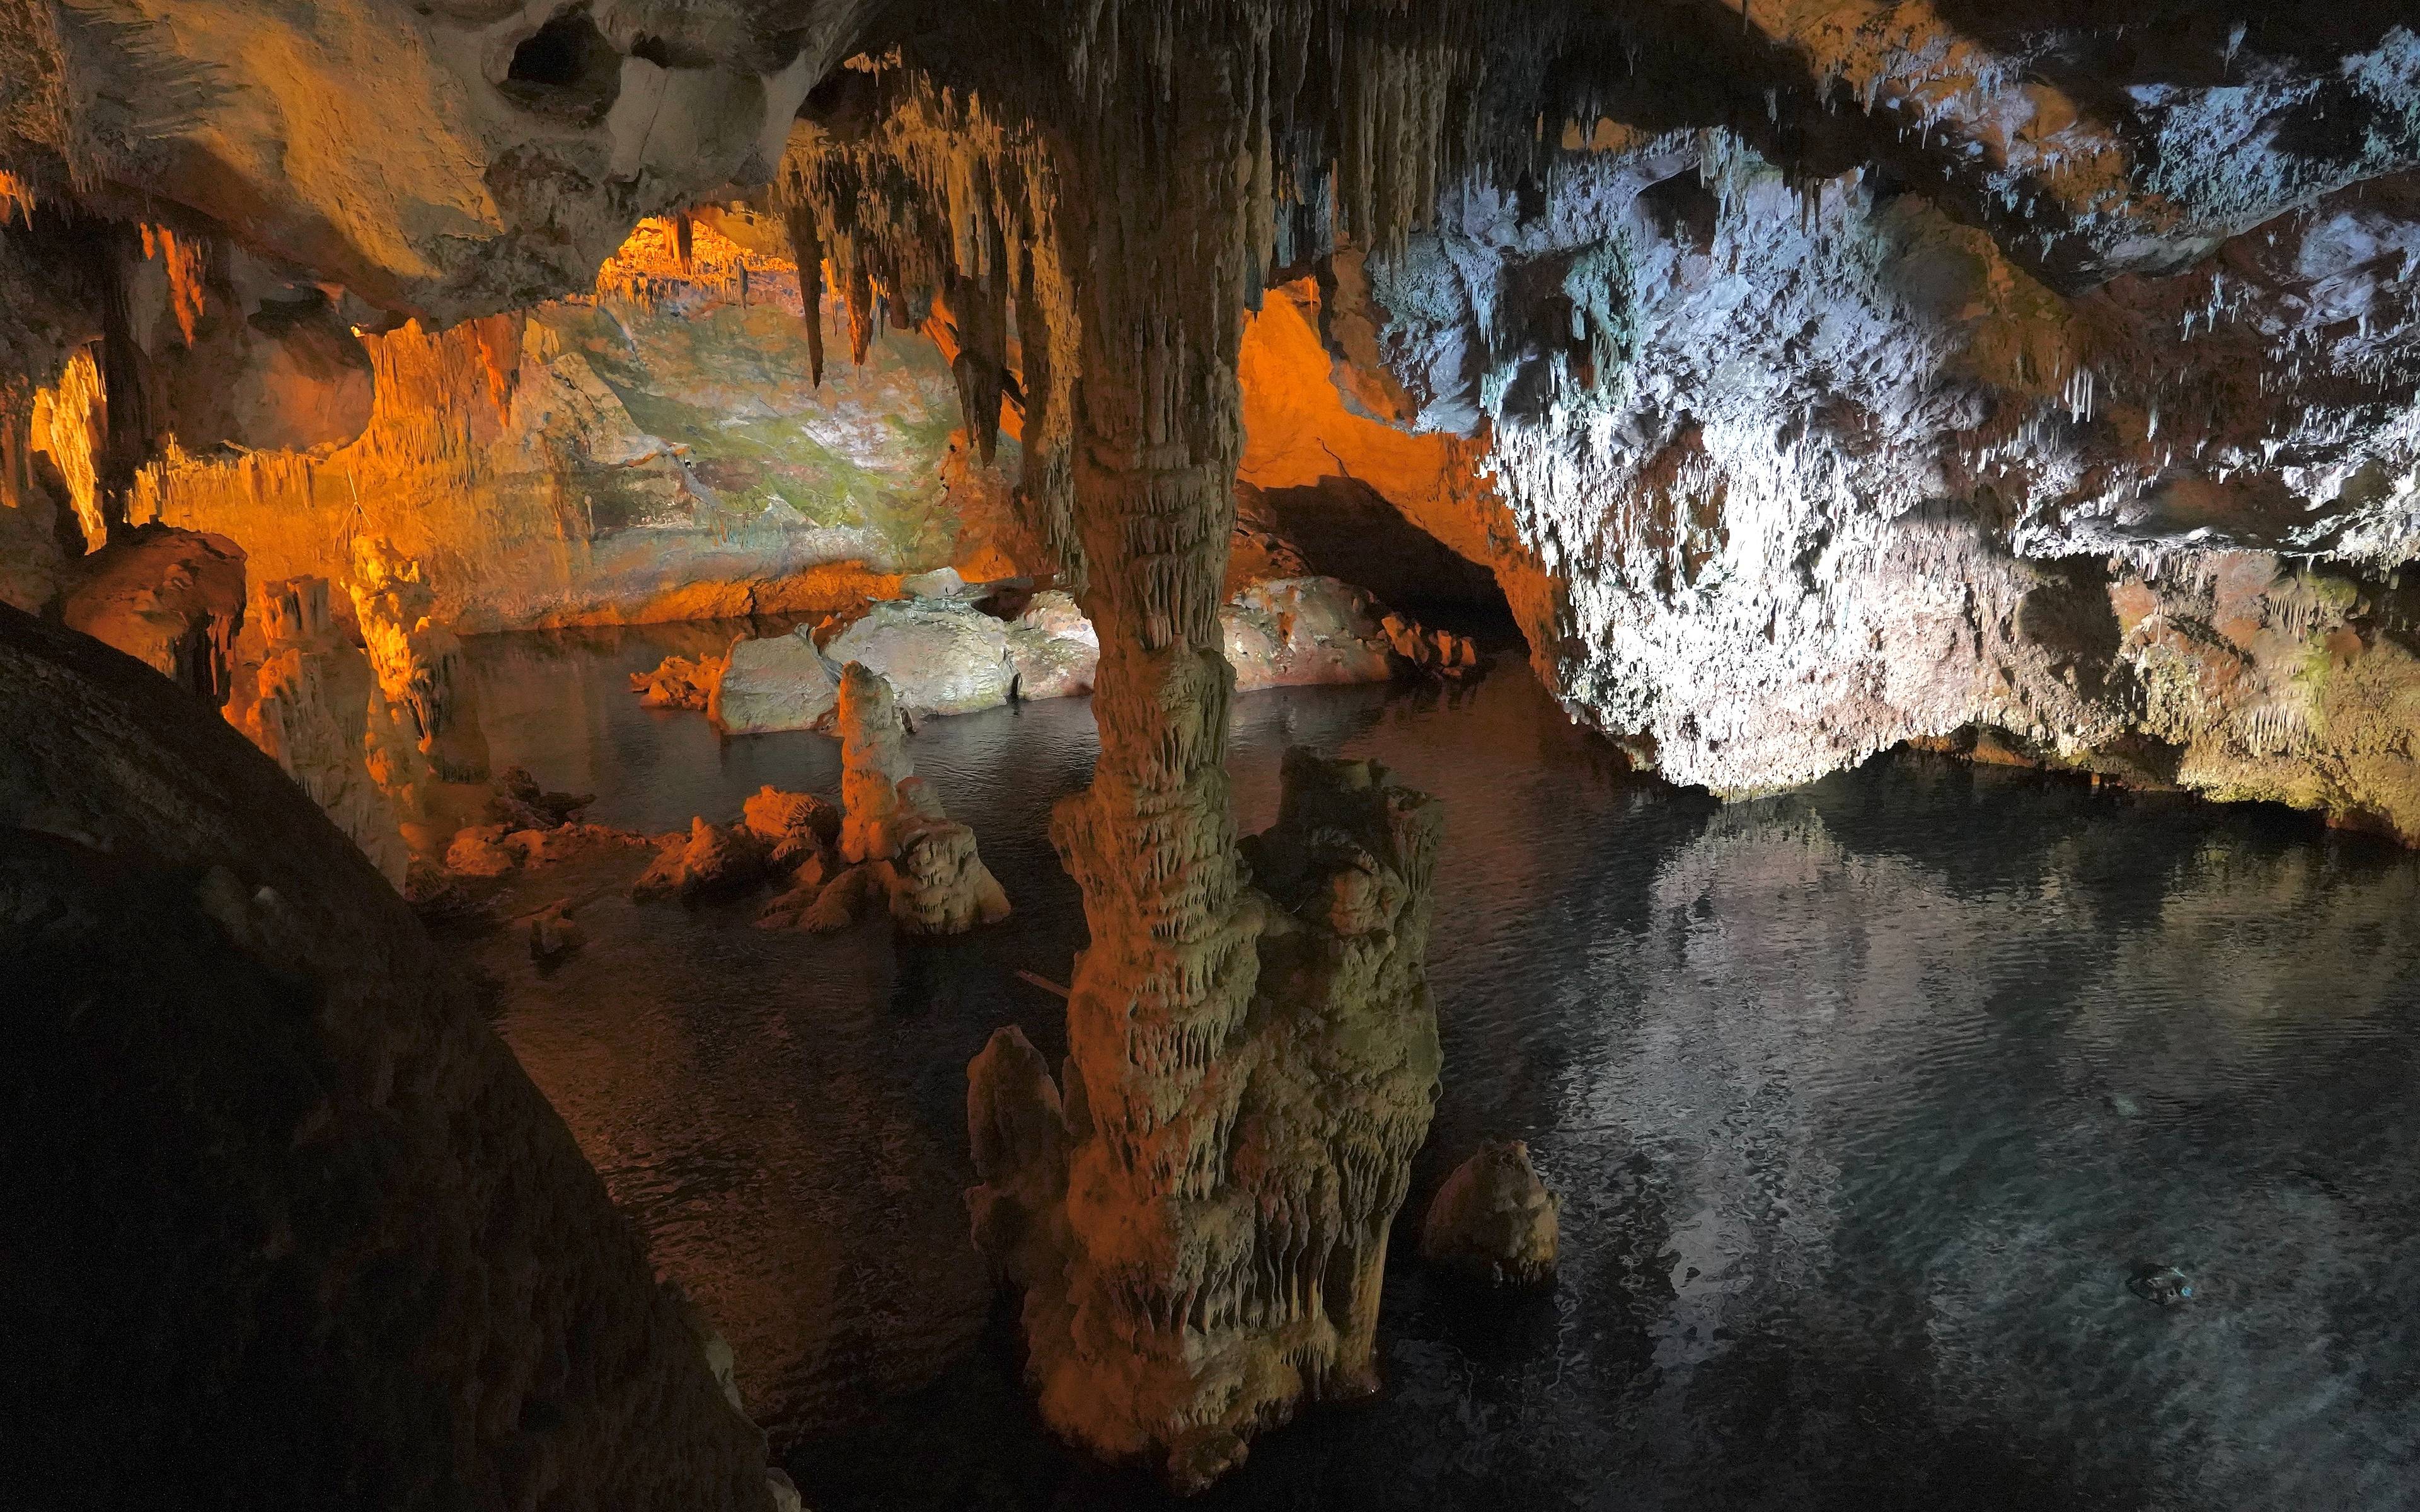 “Alghero, die Grotta di Nettuno und Capo Caccia”